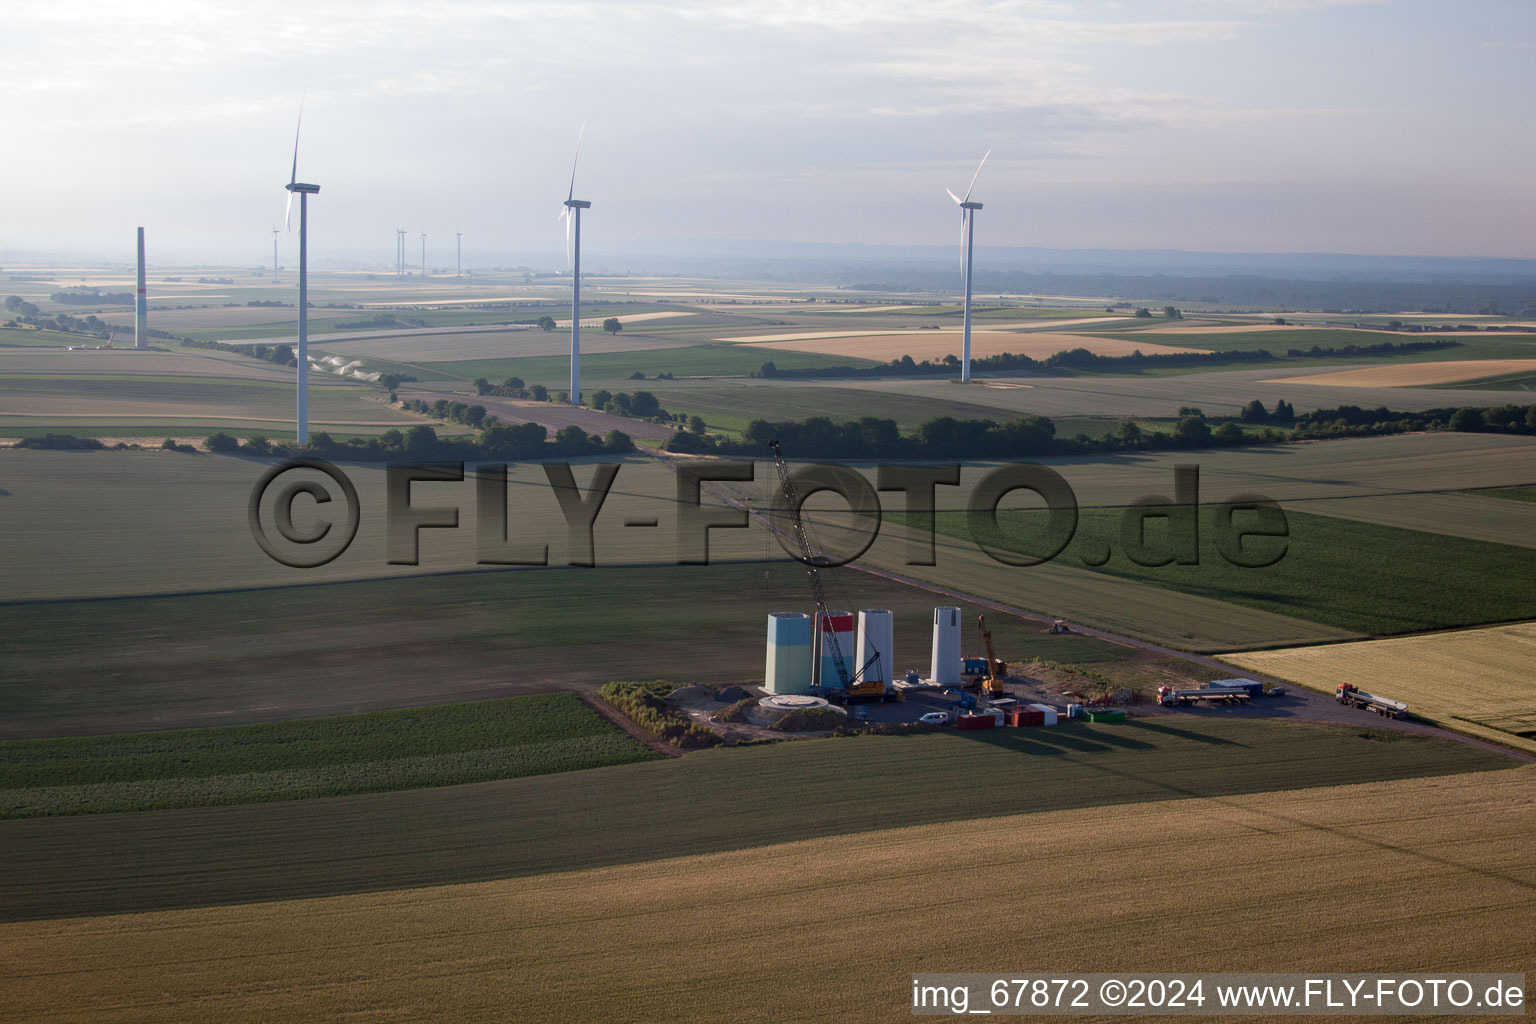 Photographie aérienne de Nouveau parc éolien à Offenbach an der Queich dans le département Rhénanie-Palatinat, Allemagne